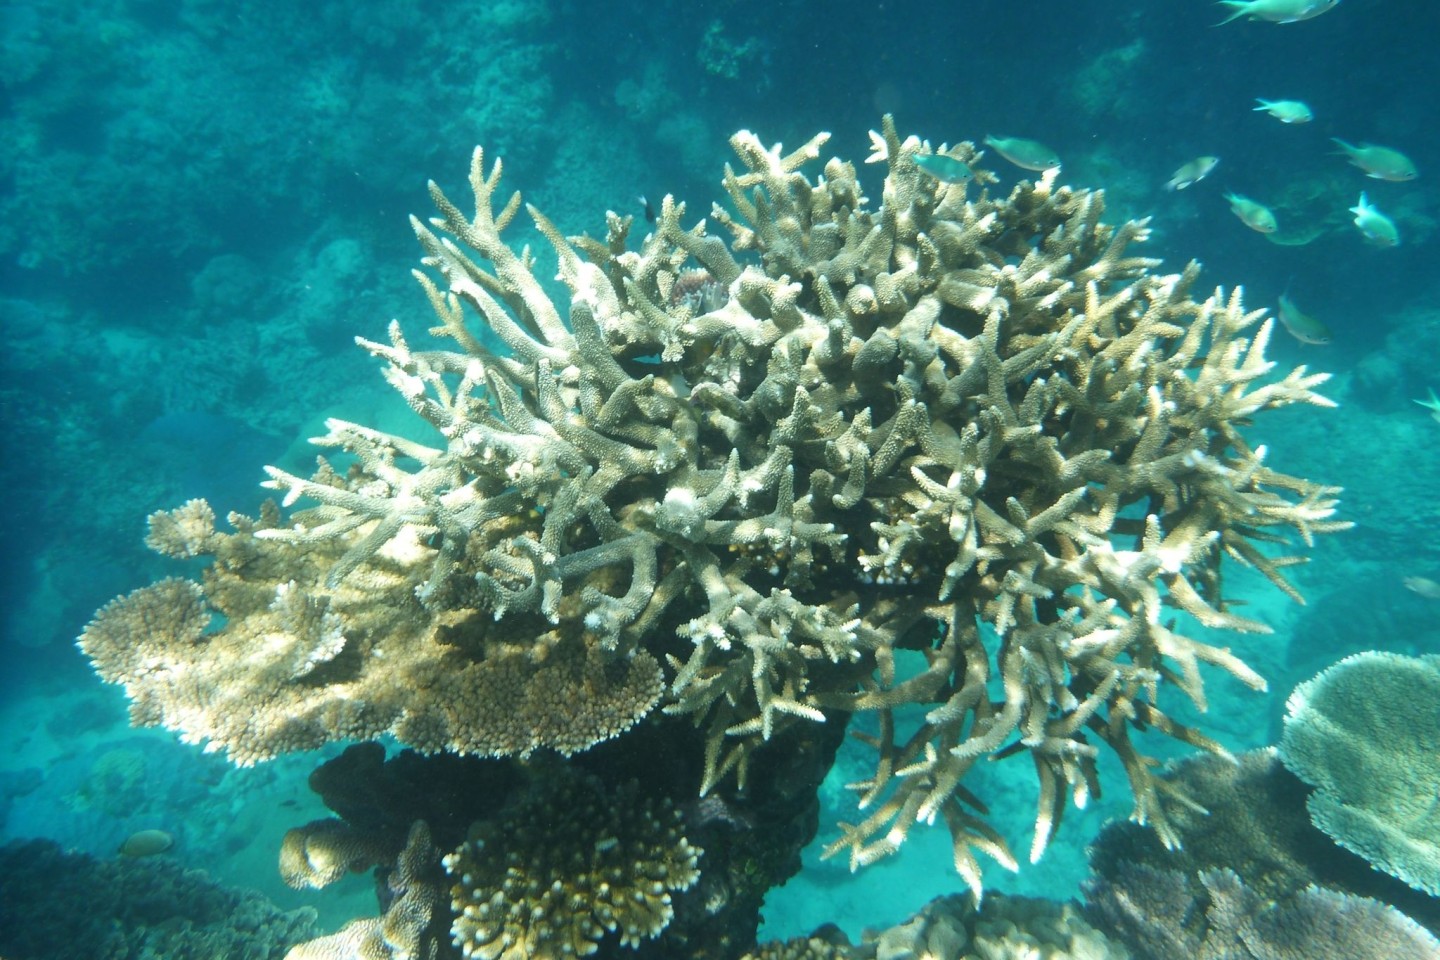 Korallenriffe weltweit befinden sich in einem besorgniserregenden Zustand.